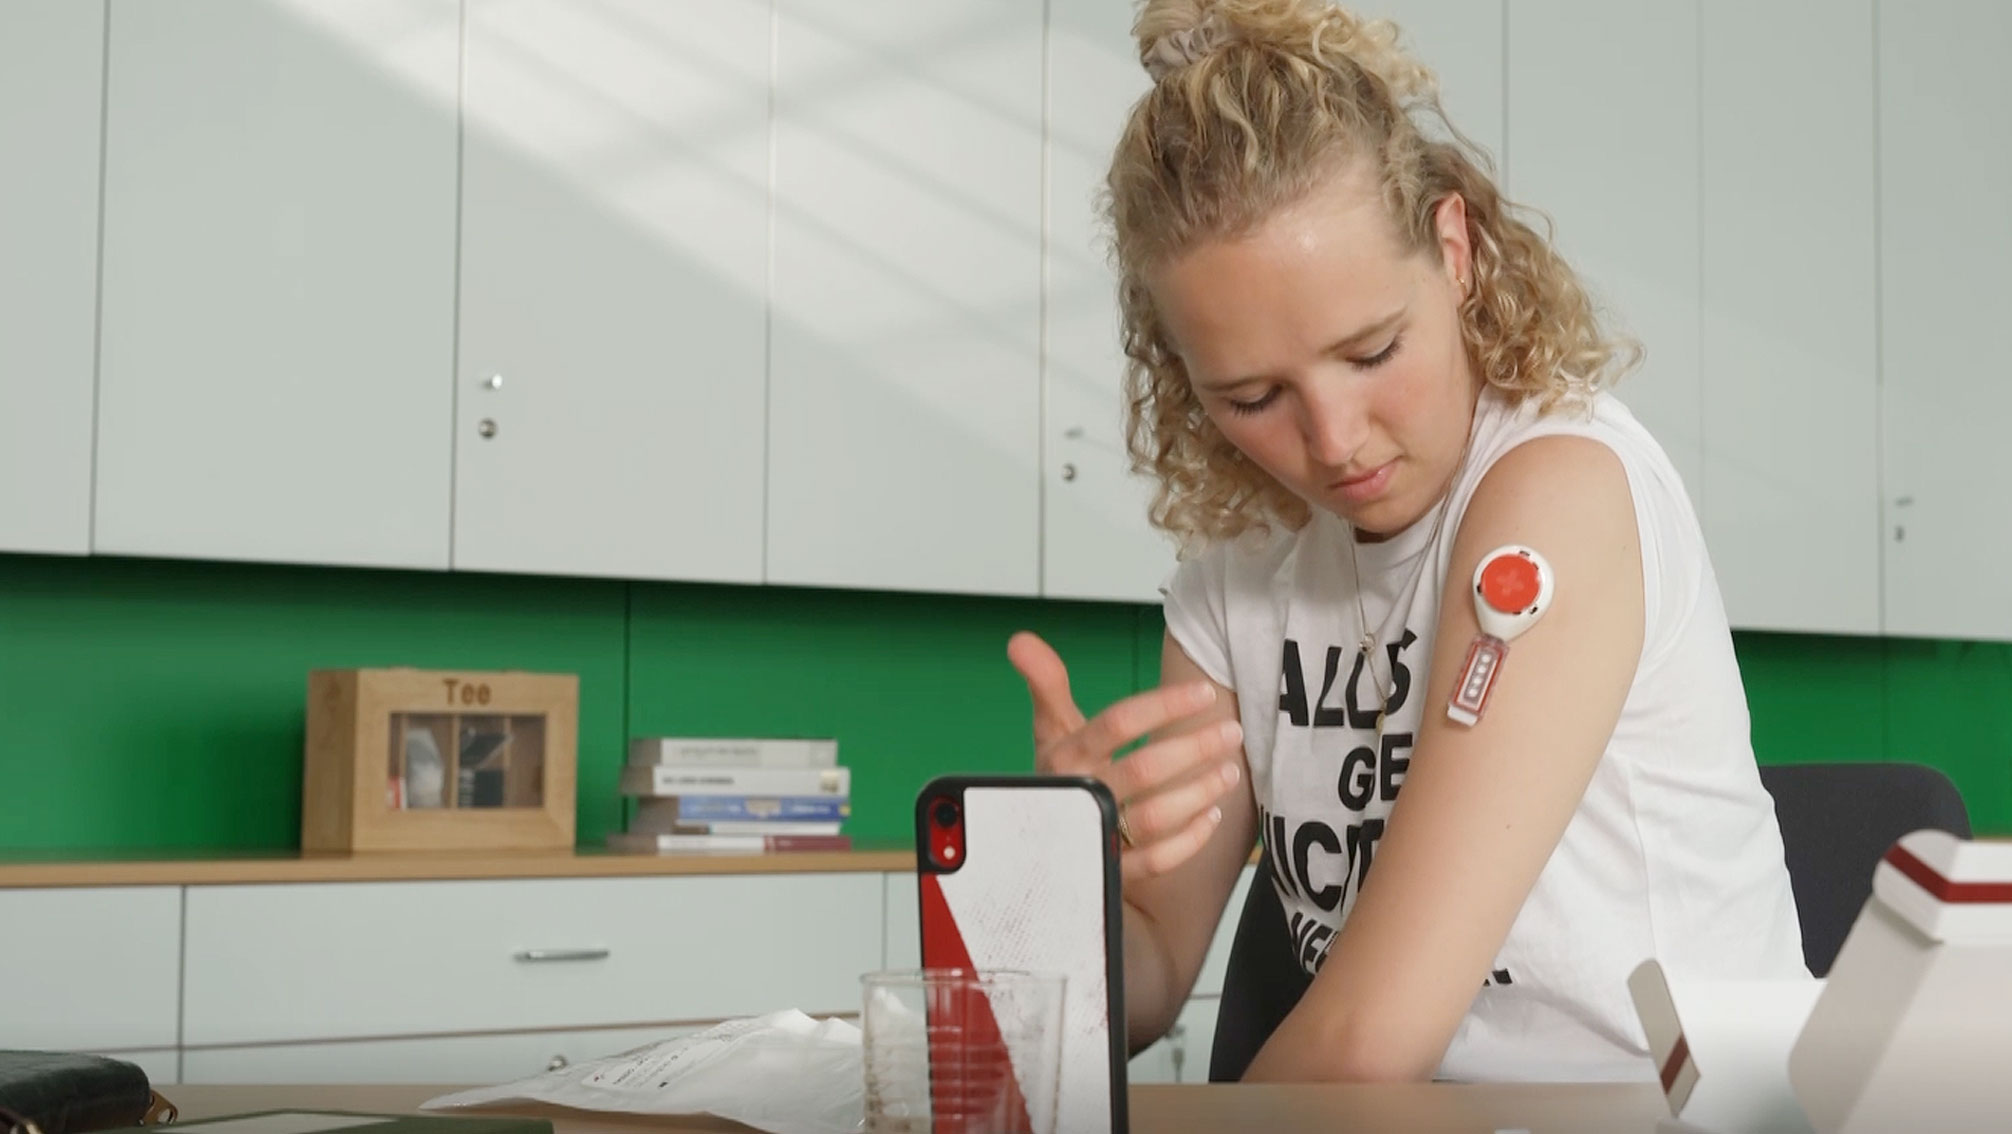 Anwendung eines Dried Blood Spot-Tests durch eine Athletin mit Gerät am Oberarm